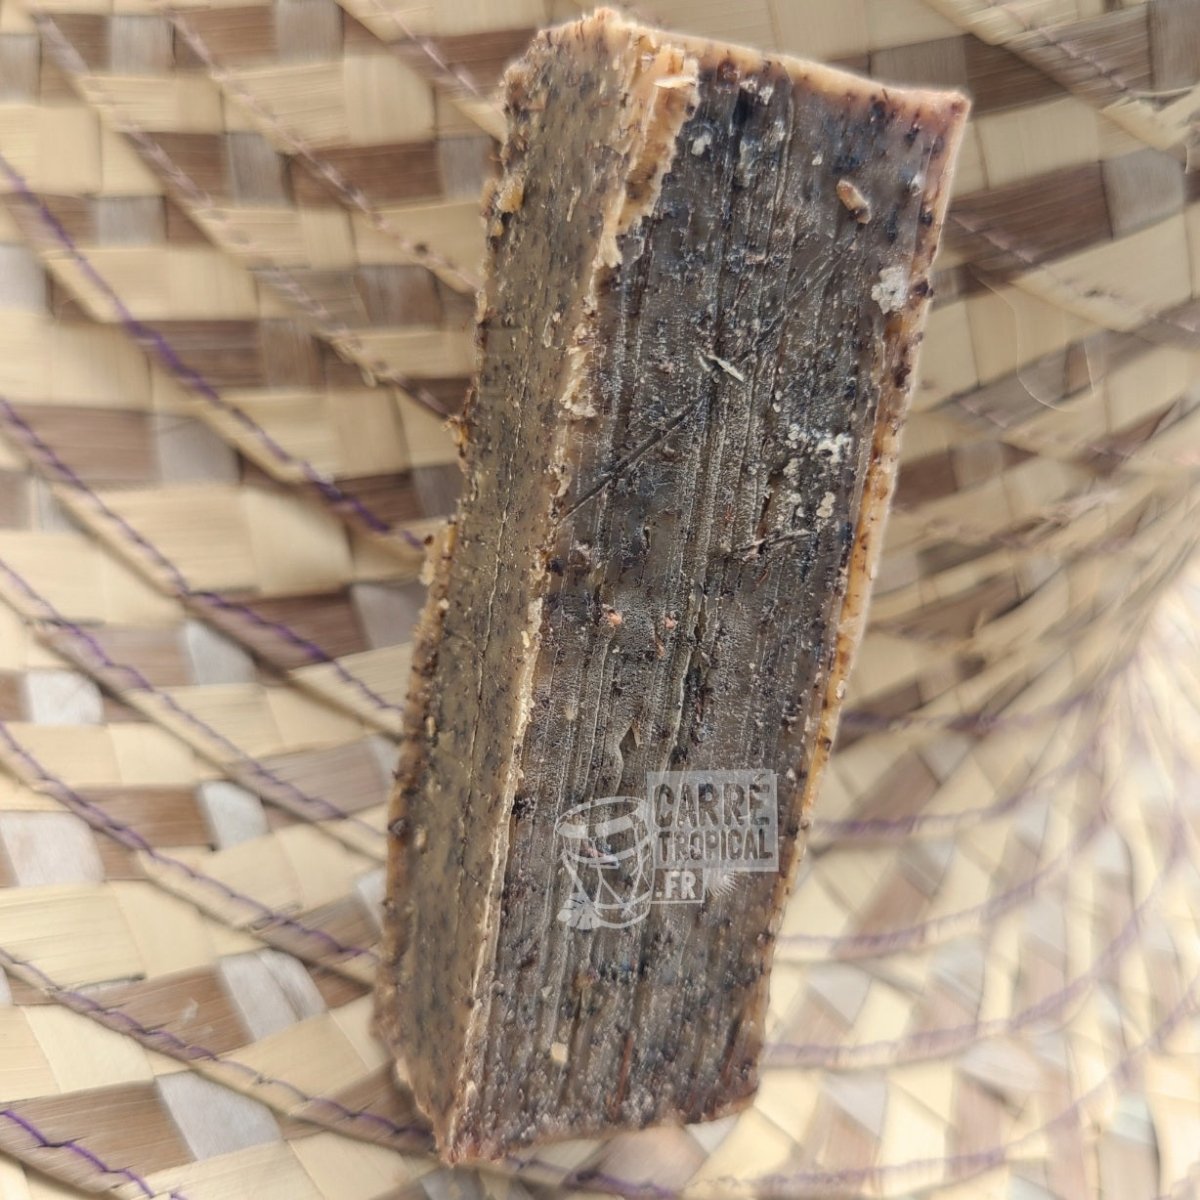 Savon cassia alata (datyé) 🌿 surgras naturel artisanal solide | Par Stéphanie Ronce - Carré TropicalBatônnet (40g)savon